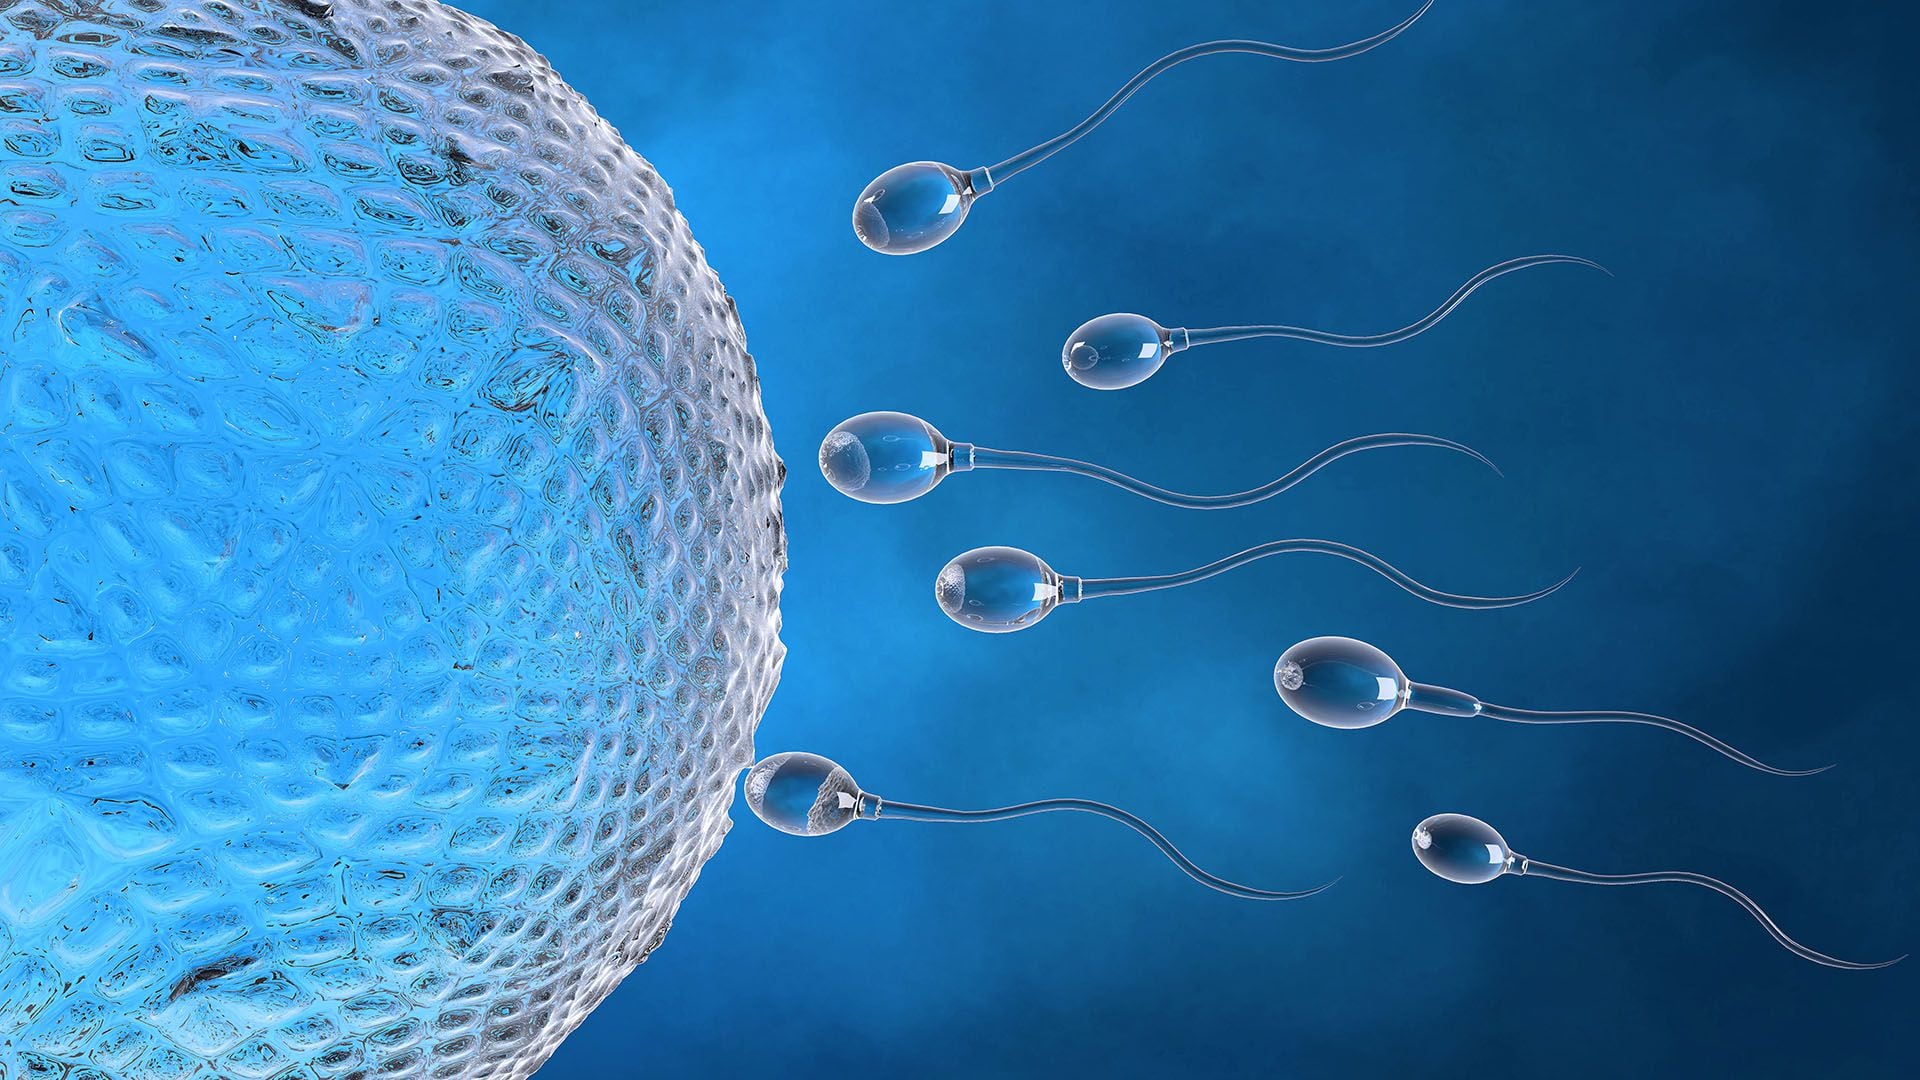  “Los hombres, en promedio, acumulan alrededor de dos mutaciones en el ADN de su esperma cada año, lo que podría ayudar a explicar por qué los riesgos para la salud de sus bebés aumentan a medida que envejecen”, explicó el doctor Michael Eisenberg, profesor de urología en la Facultad de Medicina de la Universidad de Stanford (Getty)